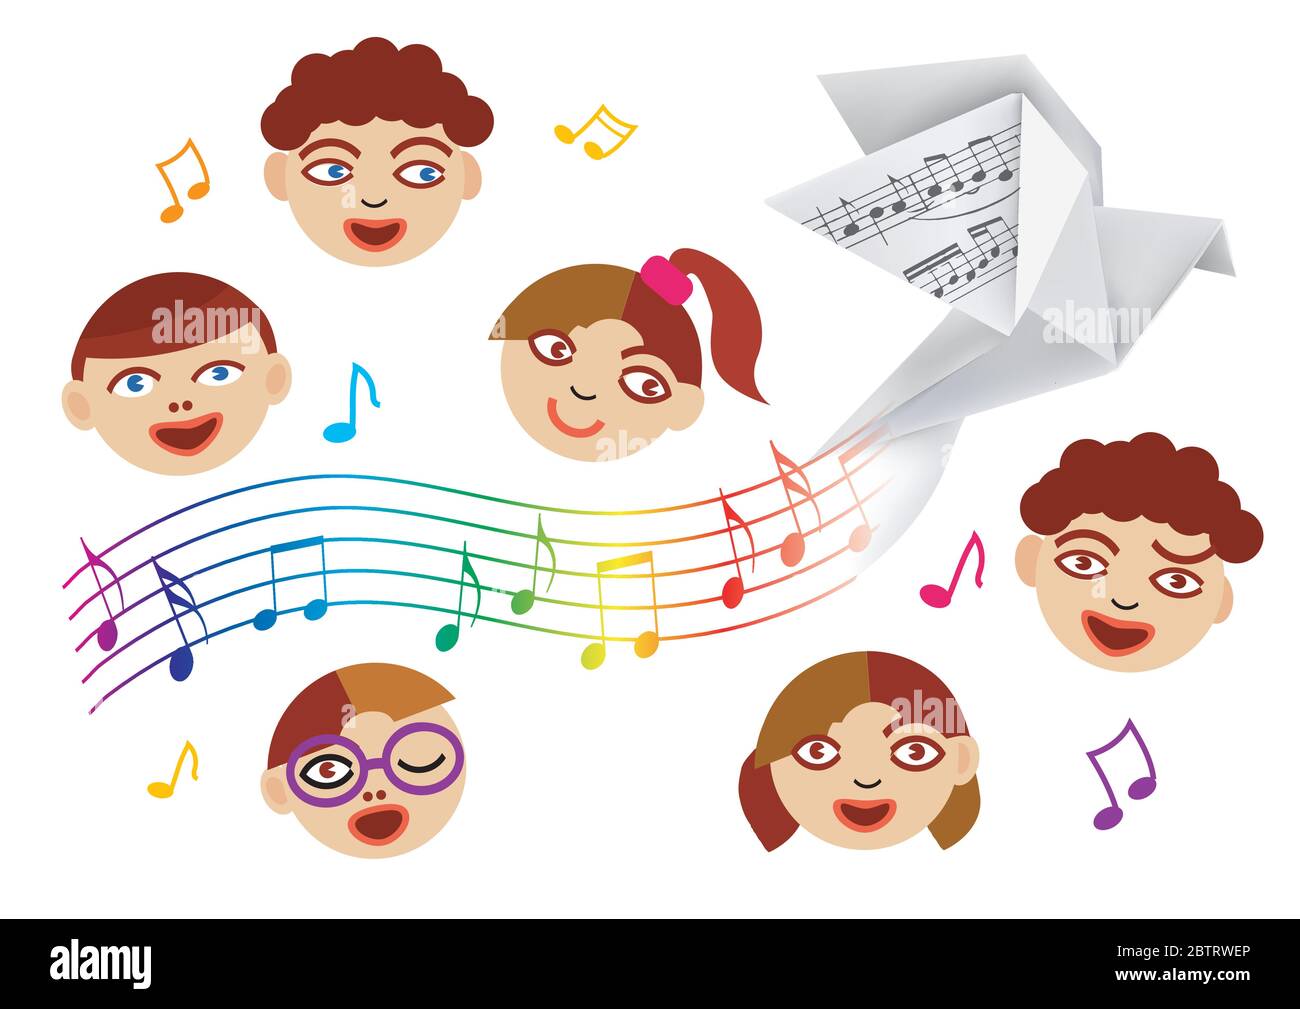 Le chœur d'enfants et le papier sont doués de notes musicales. Illustration stylisée du chœur d'enfants avec pigeon d'origami et vague avec des notes musicales. Illustration de Vecteur